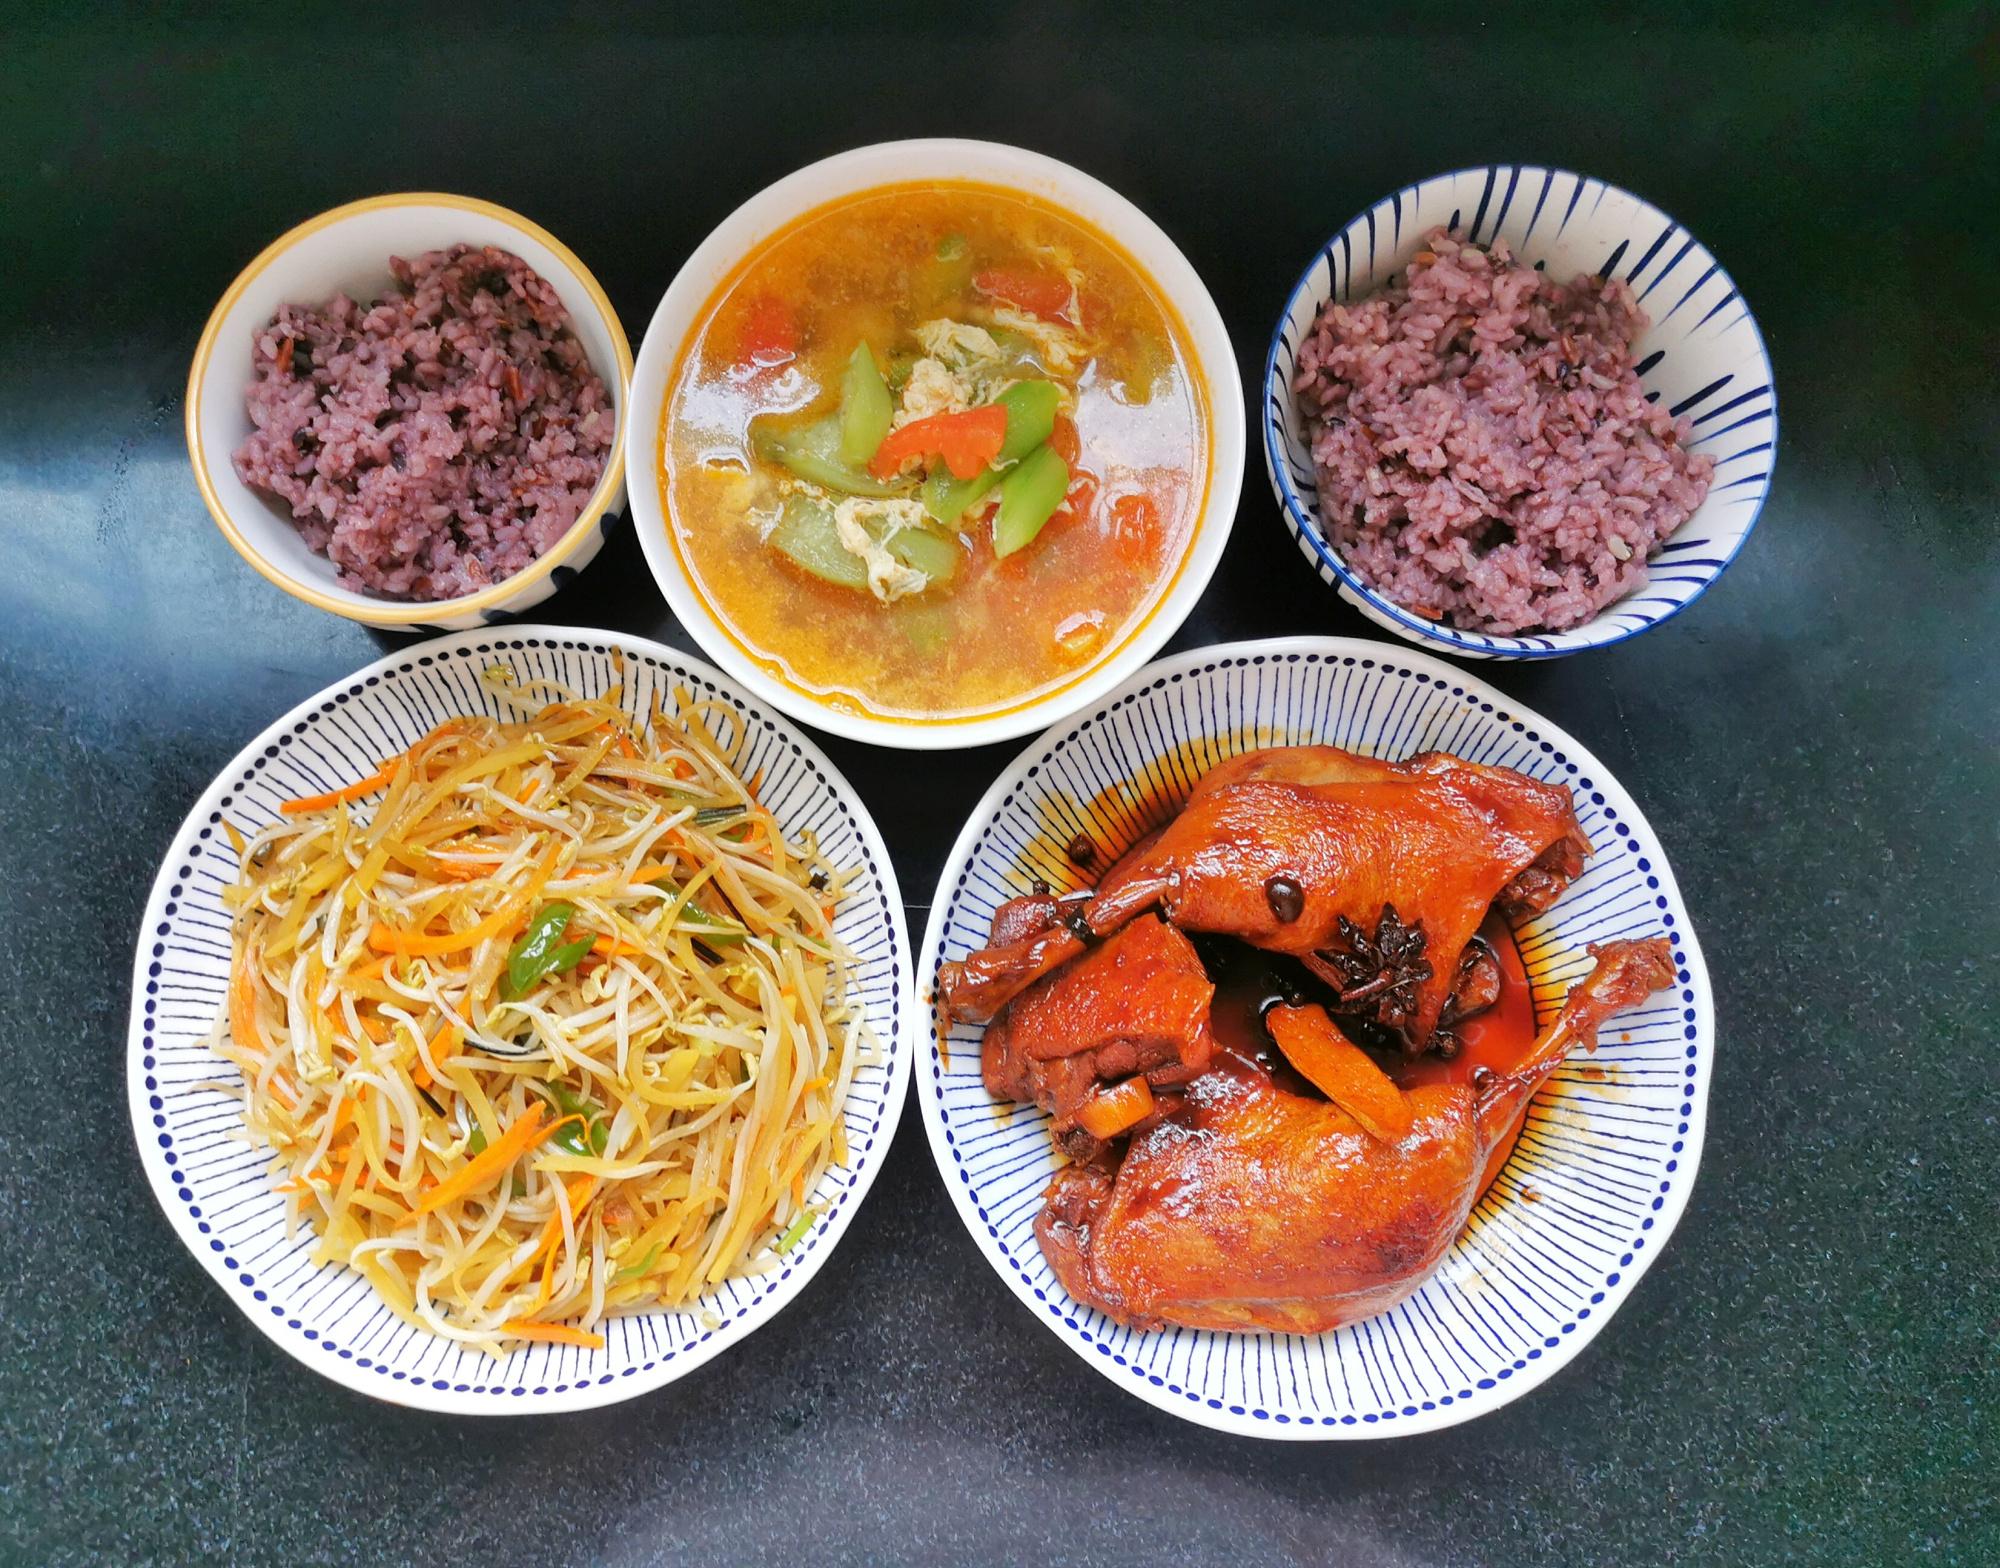 分享我家午餐菜谱：什锦虾仁、红烧鳊鱼、凉拌萝卜缨 - 哔哩哔哩